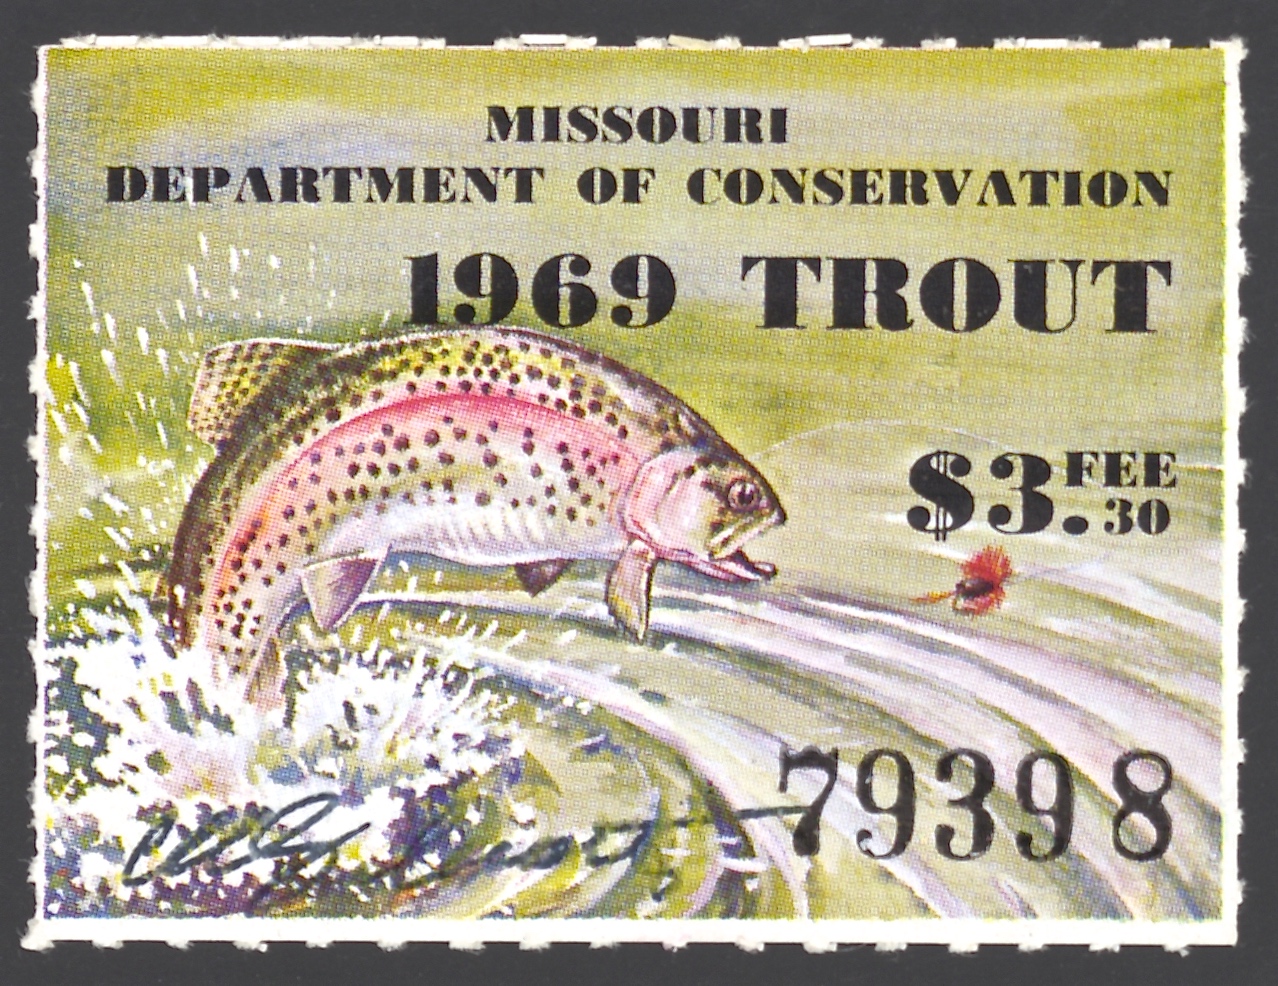 1969 Missouri Missouri Trout Stamp signed by Charles Schwartz